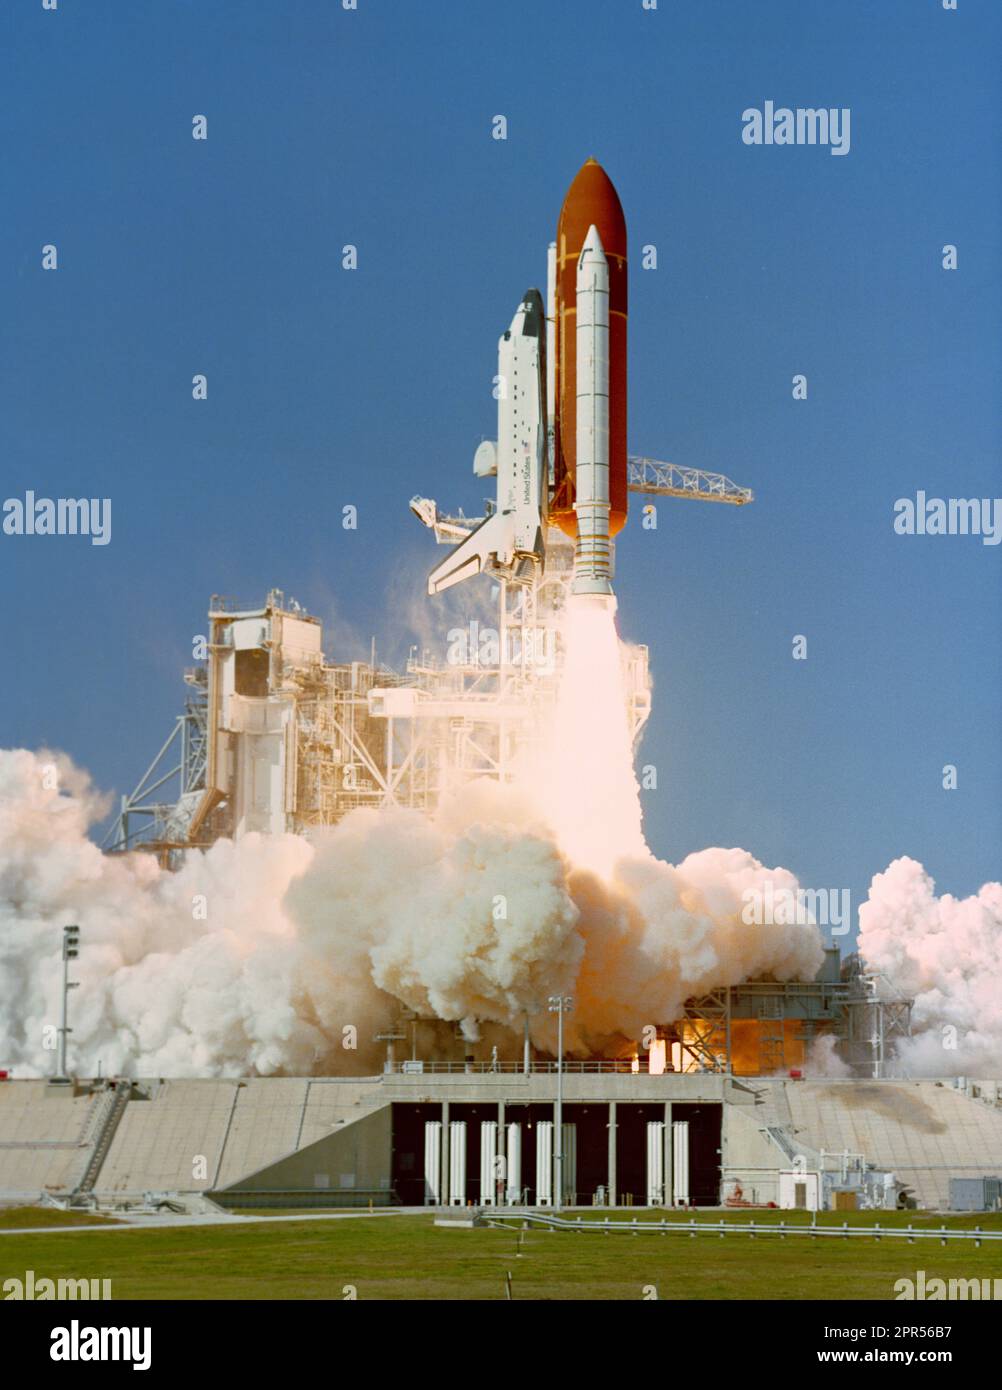 STS-27 Atlantis, Orbiter Vehicle (OV) 104, è lanciato dal KSC Launch Complex (LC) Pad 39B per una missione dedicata del Dipartimento della Difesa (DOD). OV-104, in cima al carro armato esterno (ET), si alza sopra la piattaforma di lancio mobile e la piattaforma di lancio con la torre di lancio ancora visibile sullo sfondo. Foto Stock